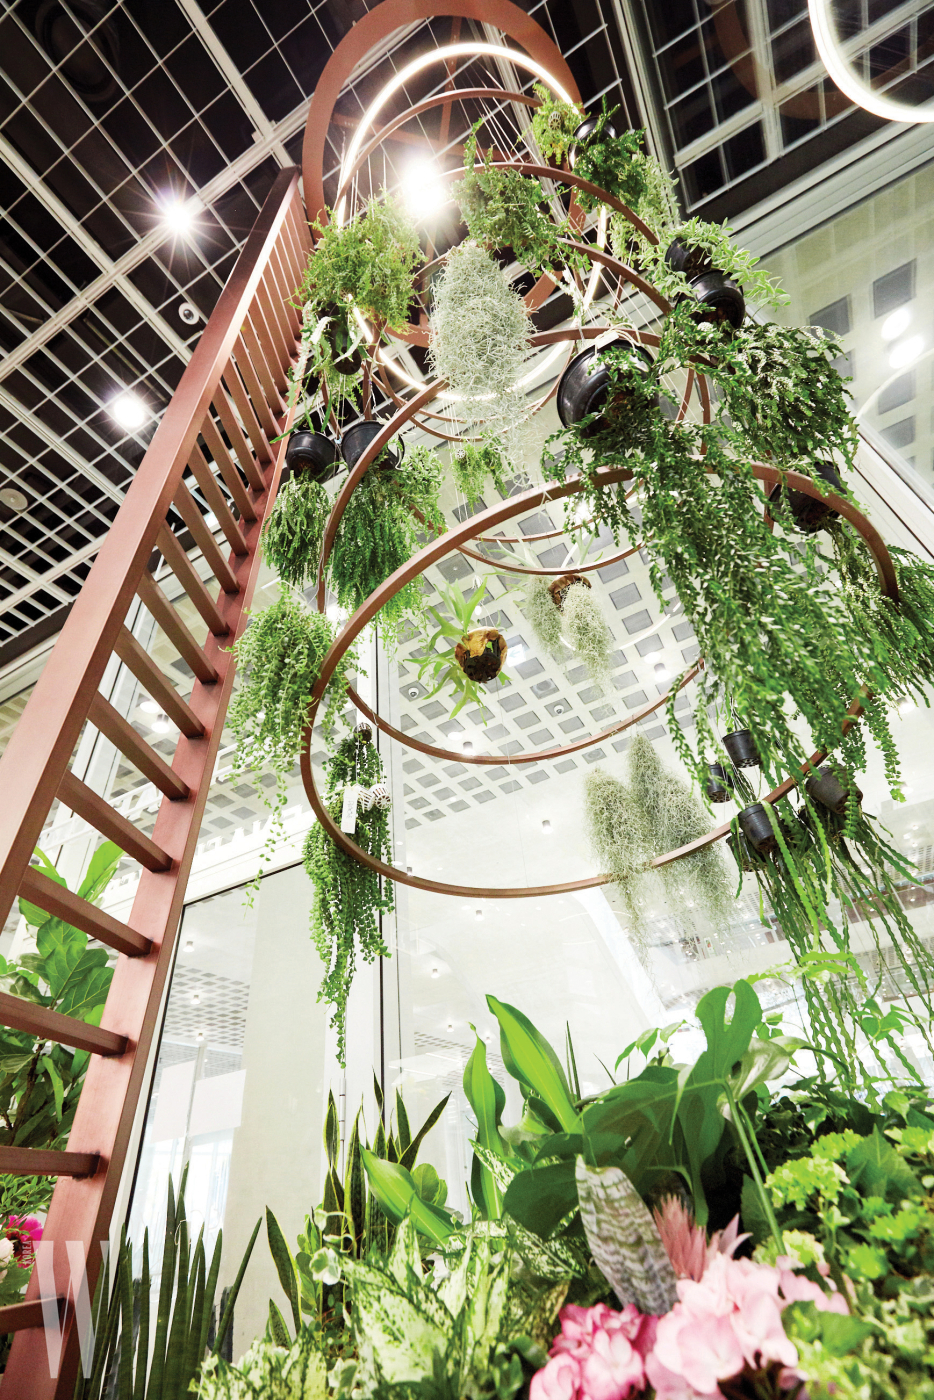 6미터가량의 천장 가득 다채로운 식물이 장식된 에어 플랜트.